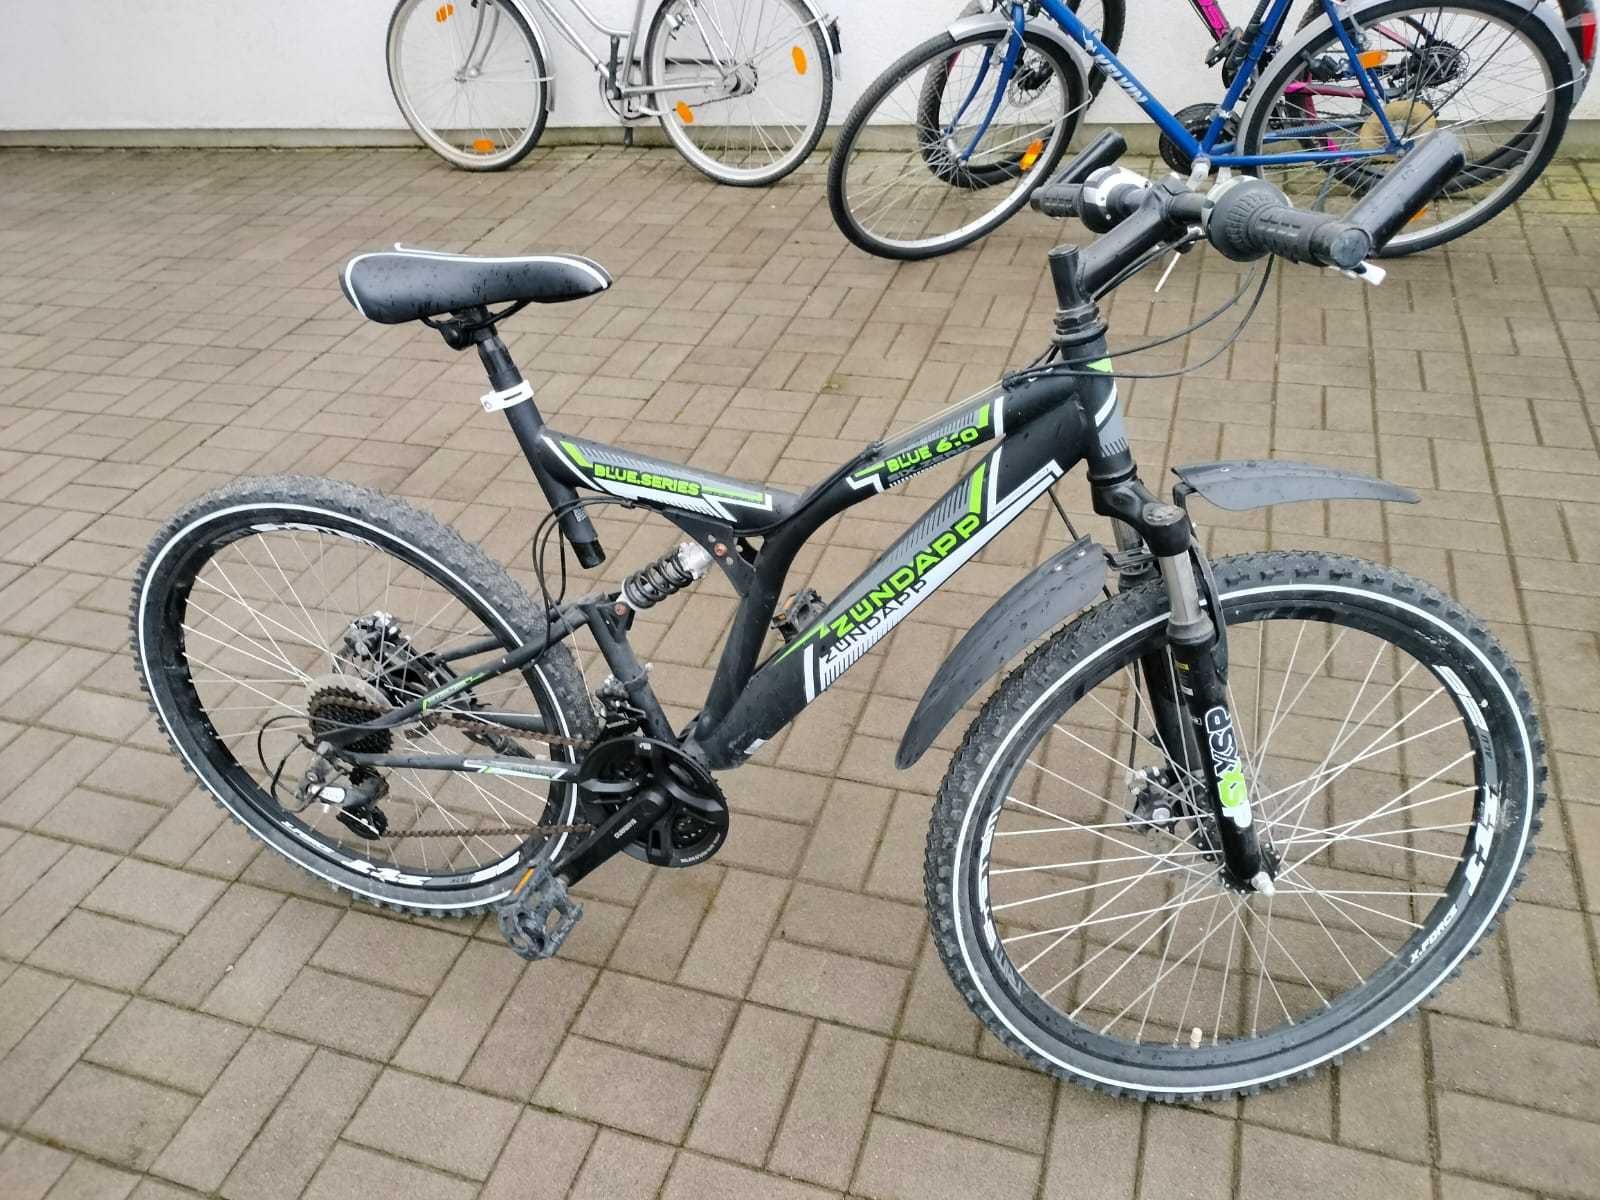 Sprzedam rower górki firmy Zundapp, koła 26 cali